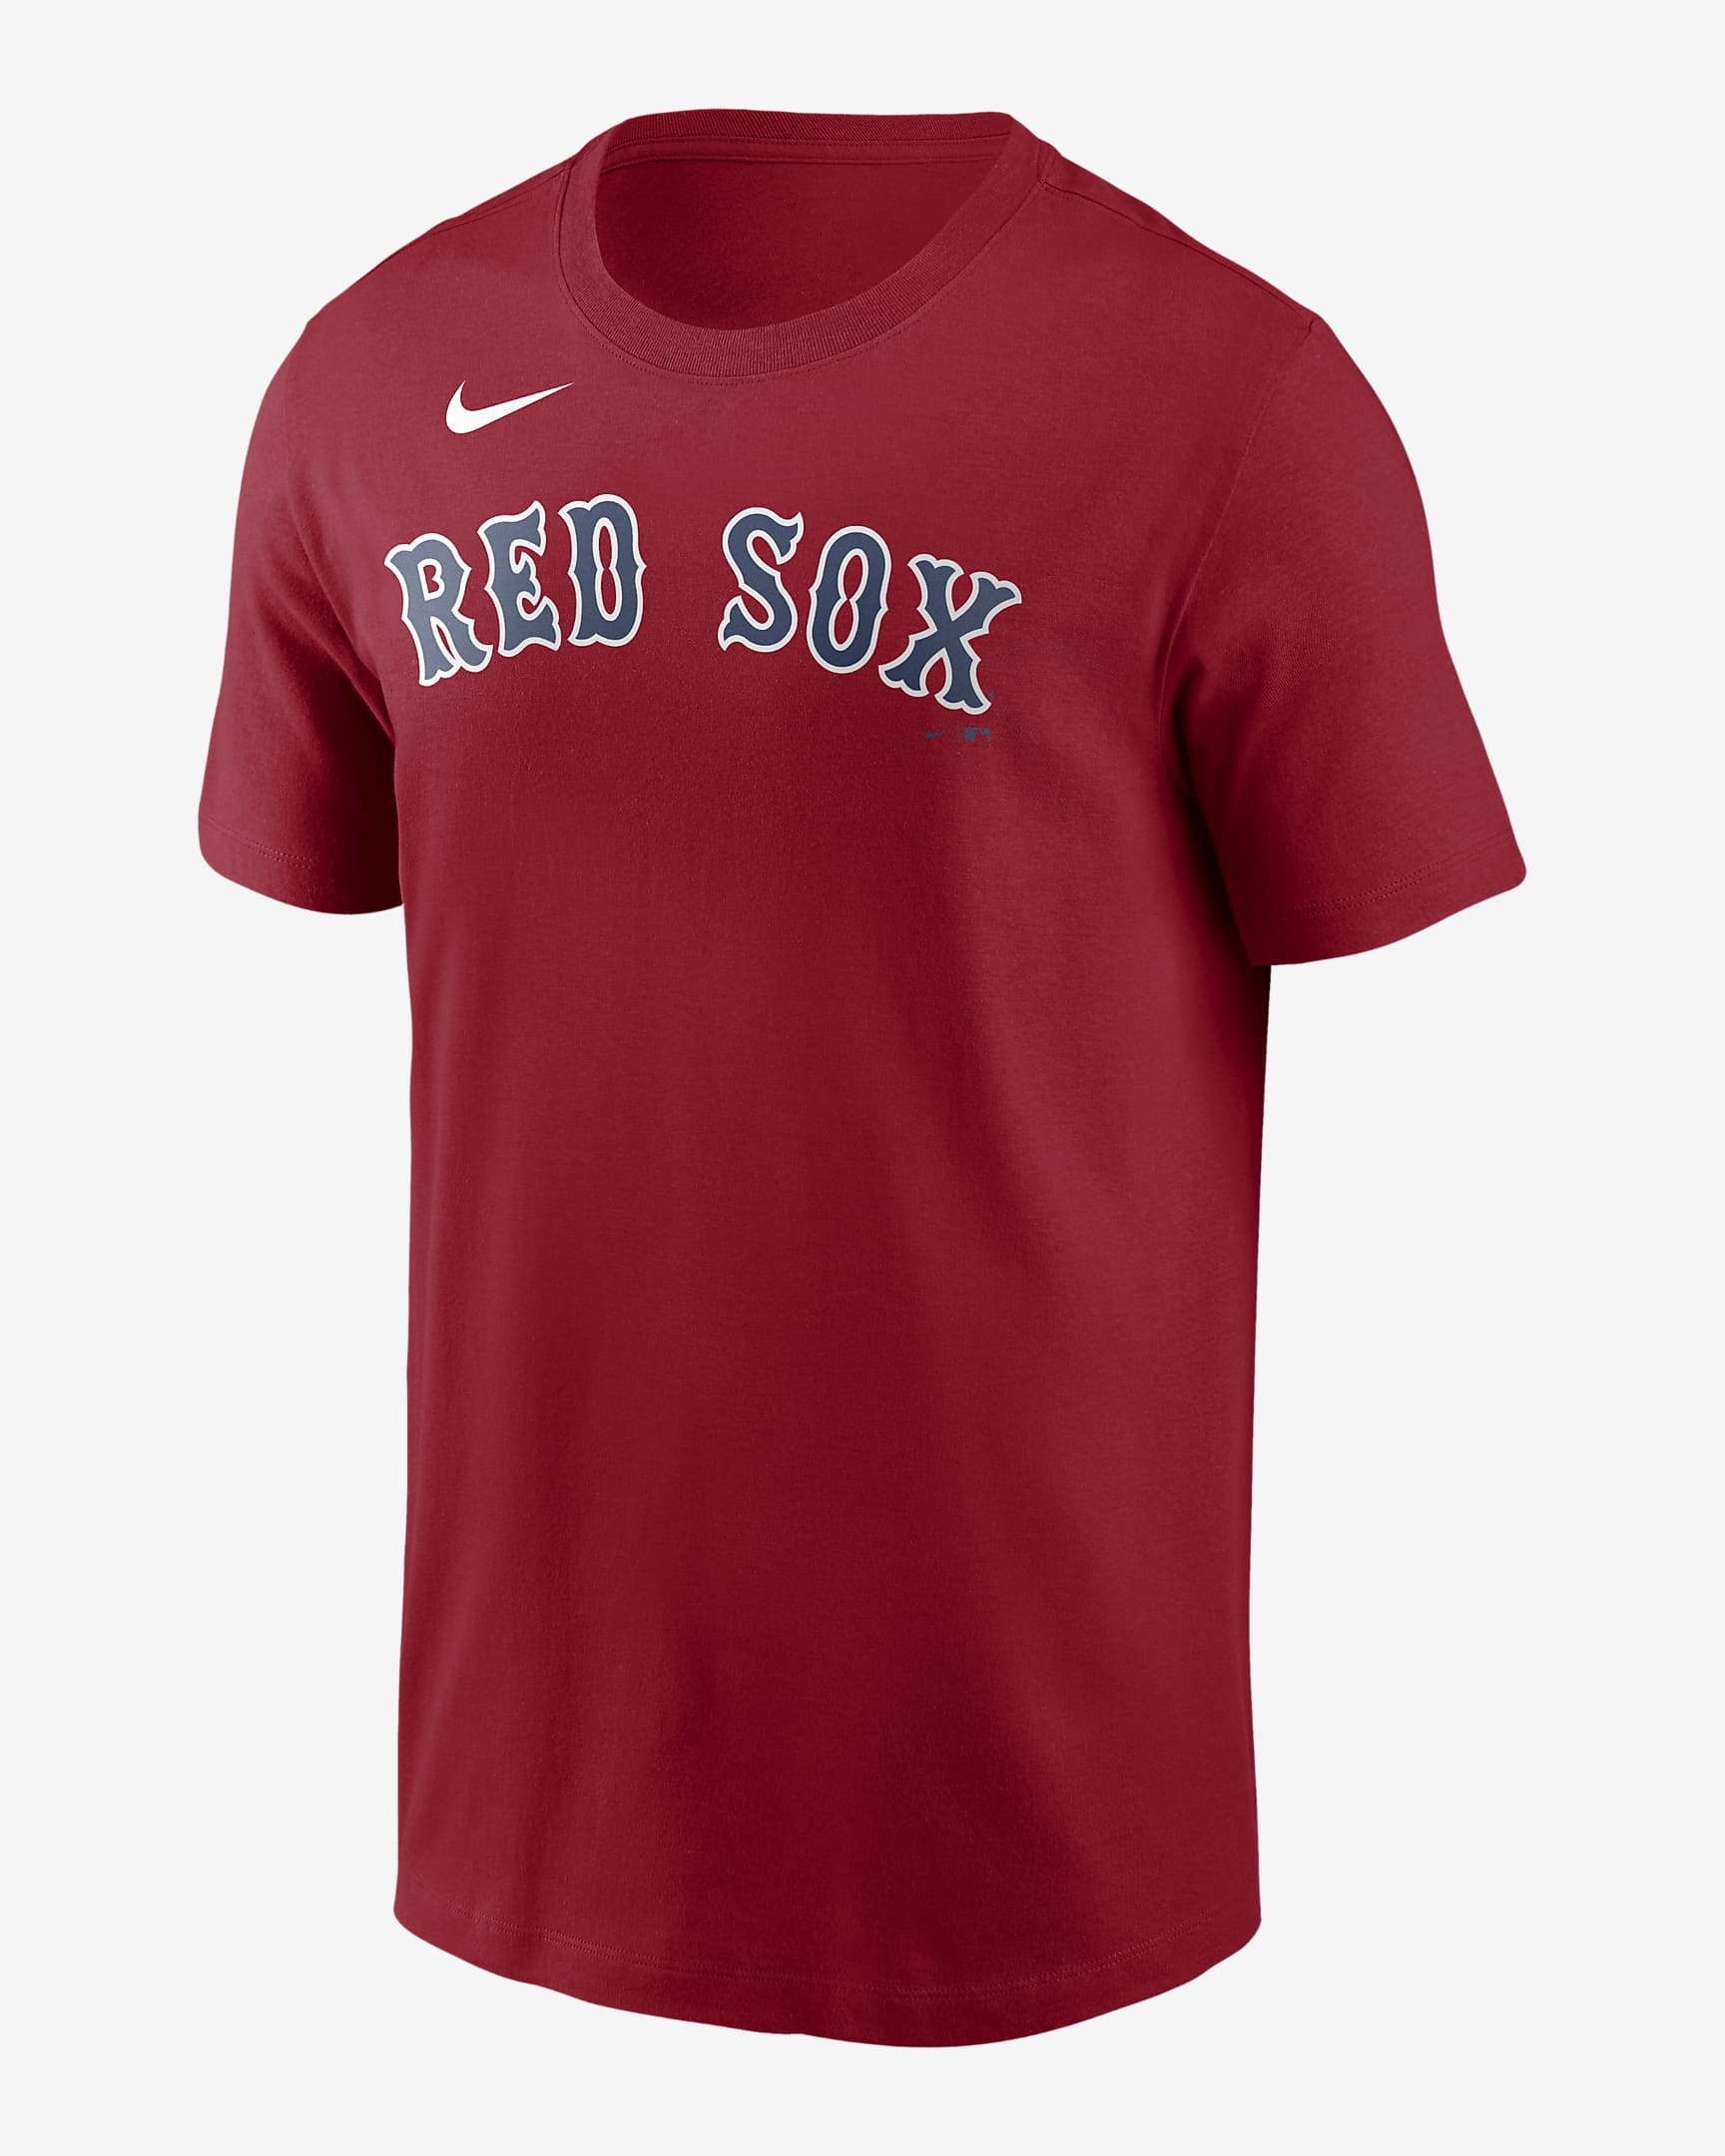 MLB Boston Red Sox (J.D. Martinez) Men's T-Shirt. Nike.com